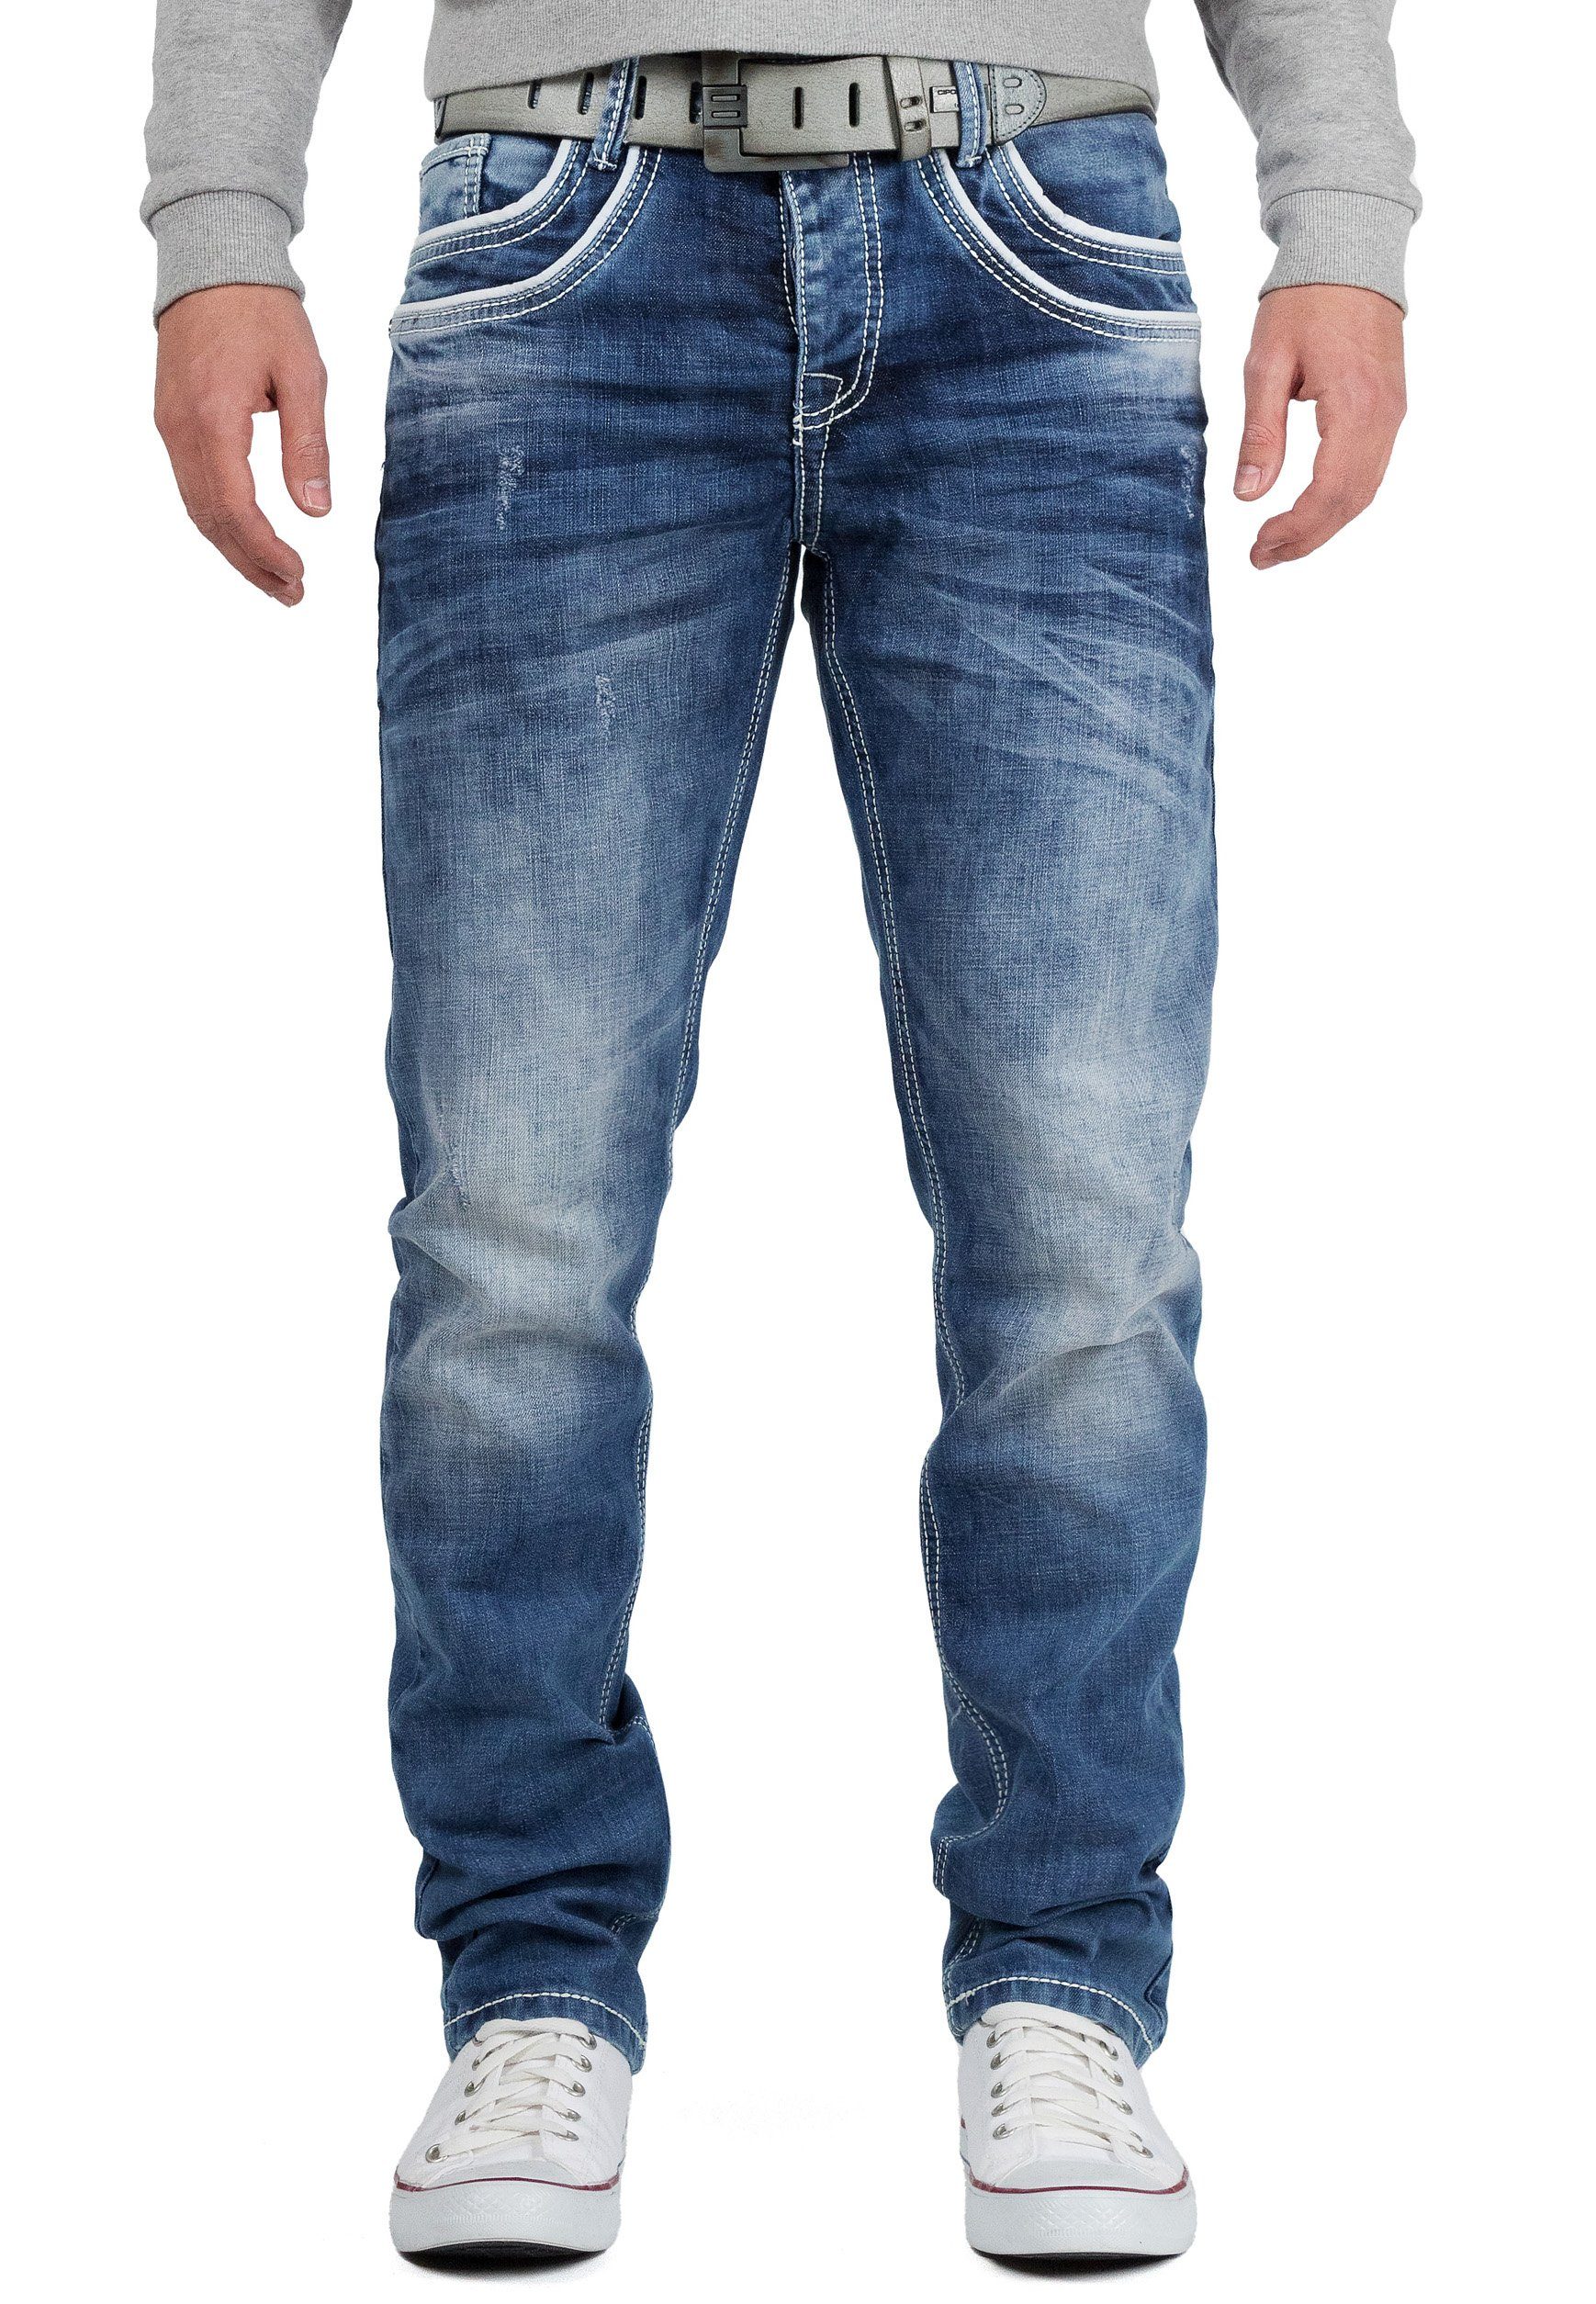 Herren Jeans Cipo & Baxx 5-Pocket-Jeans Herren Hose BA-C1127 Weiße Ziernaht und Stonewashed